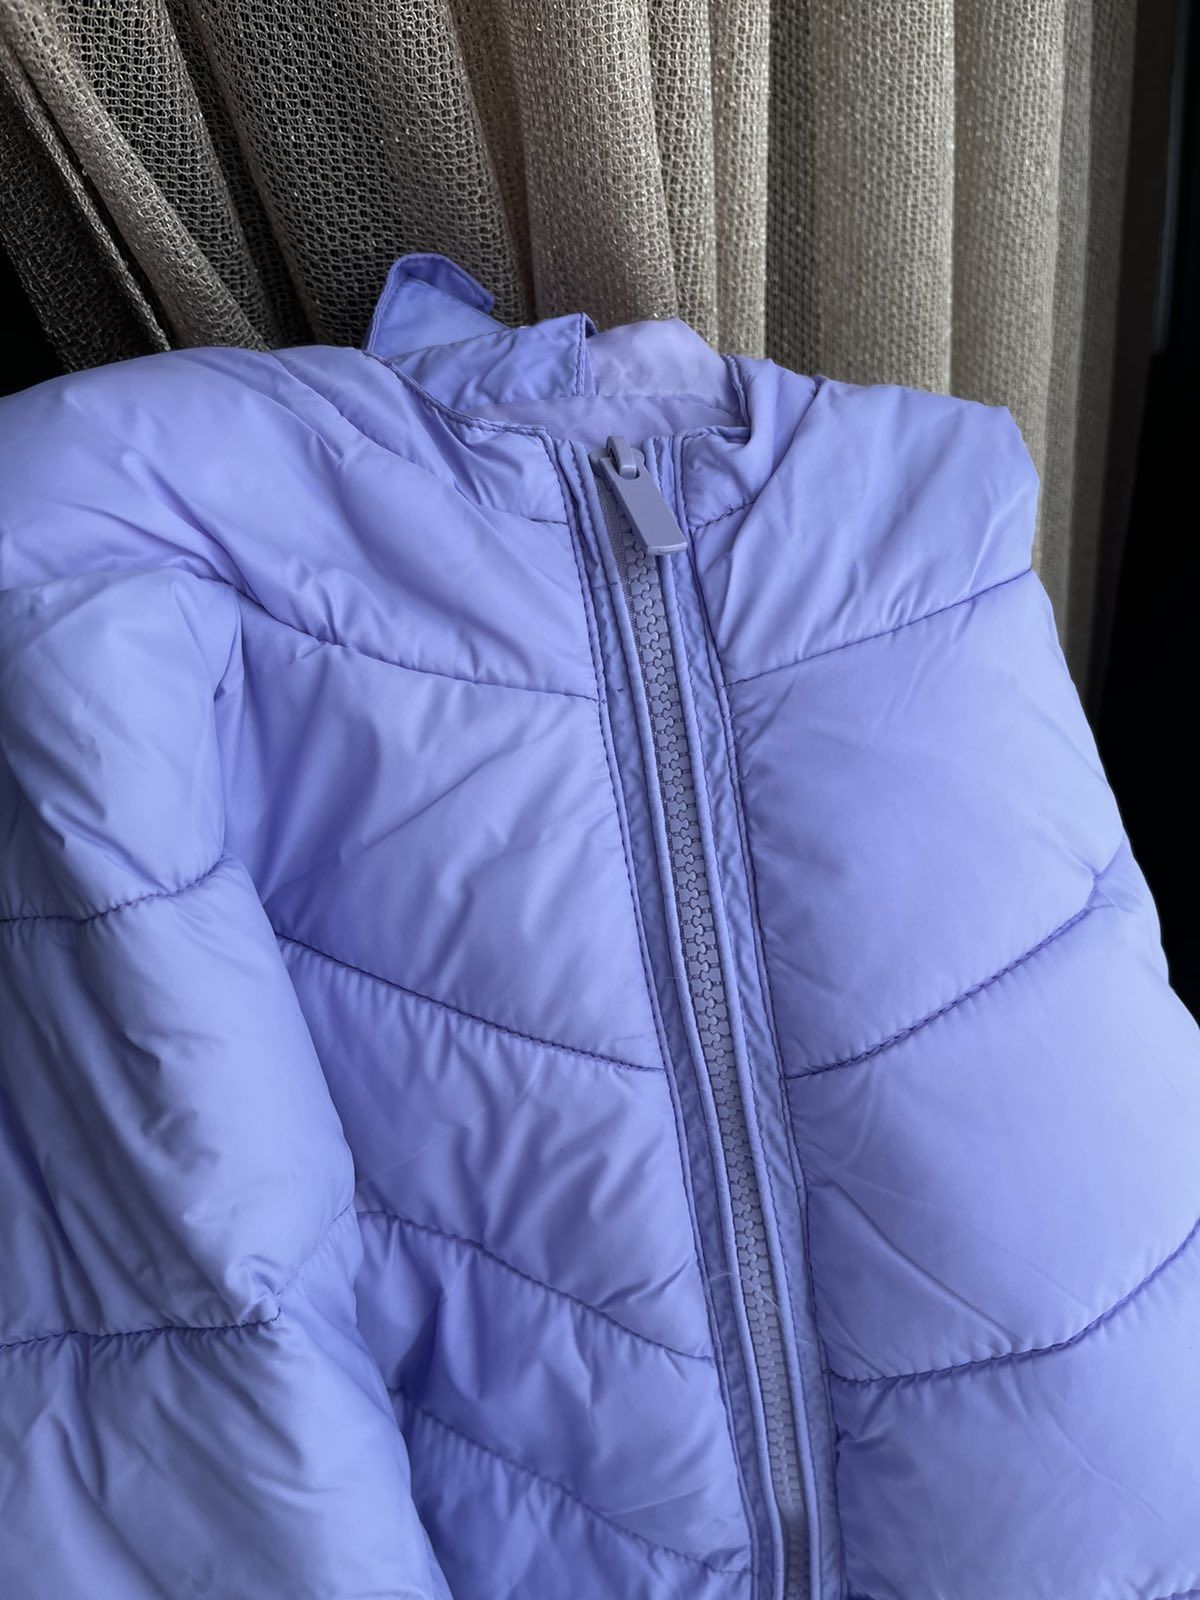 Новая демисезонная женская куртка Glo-story. Размер S/M.